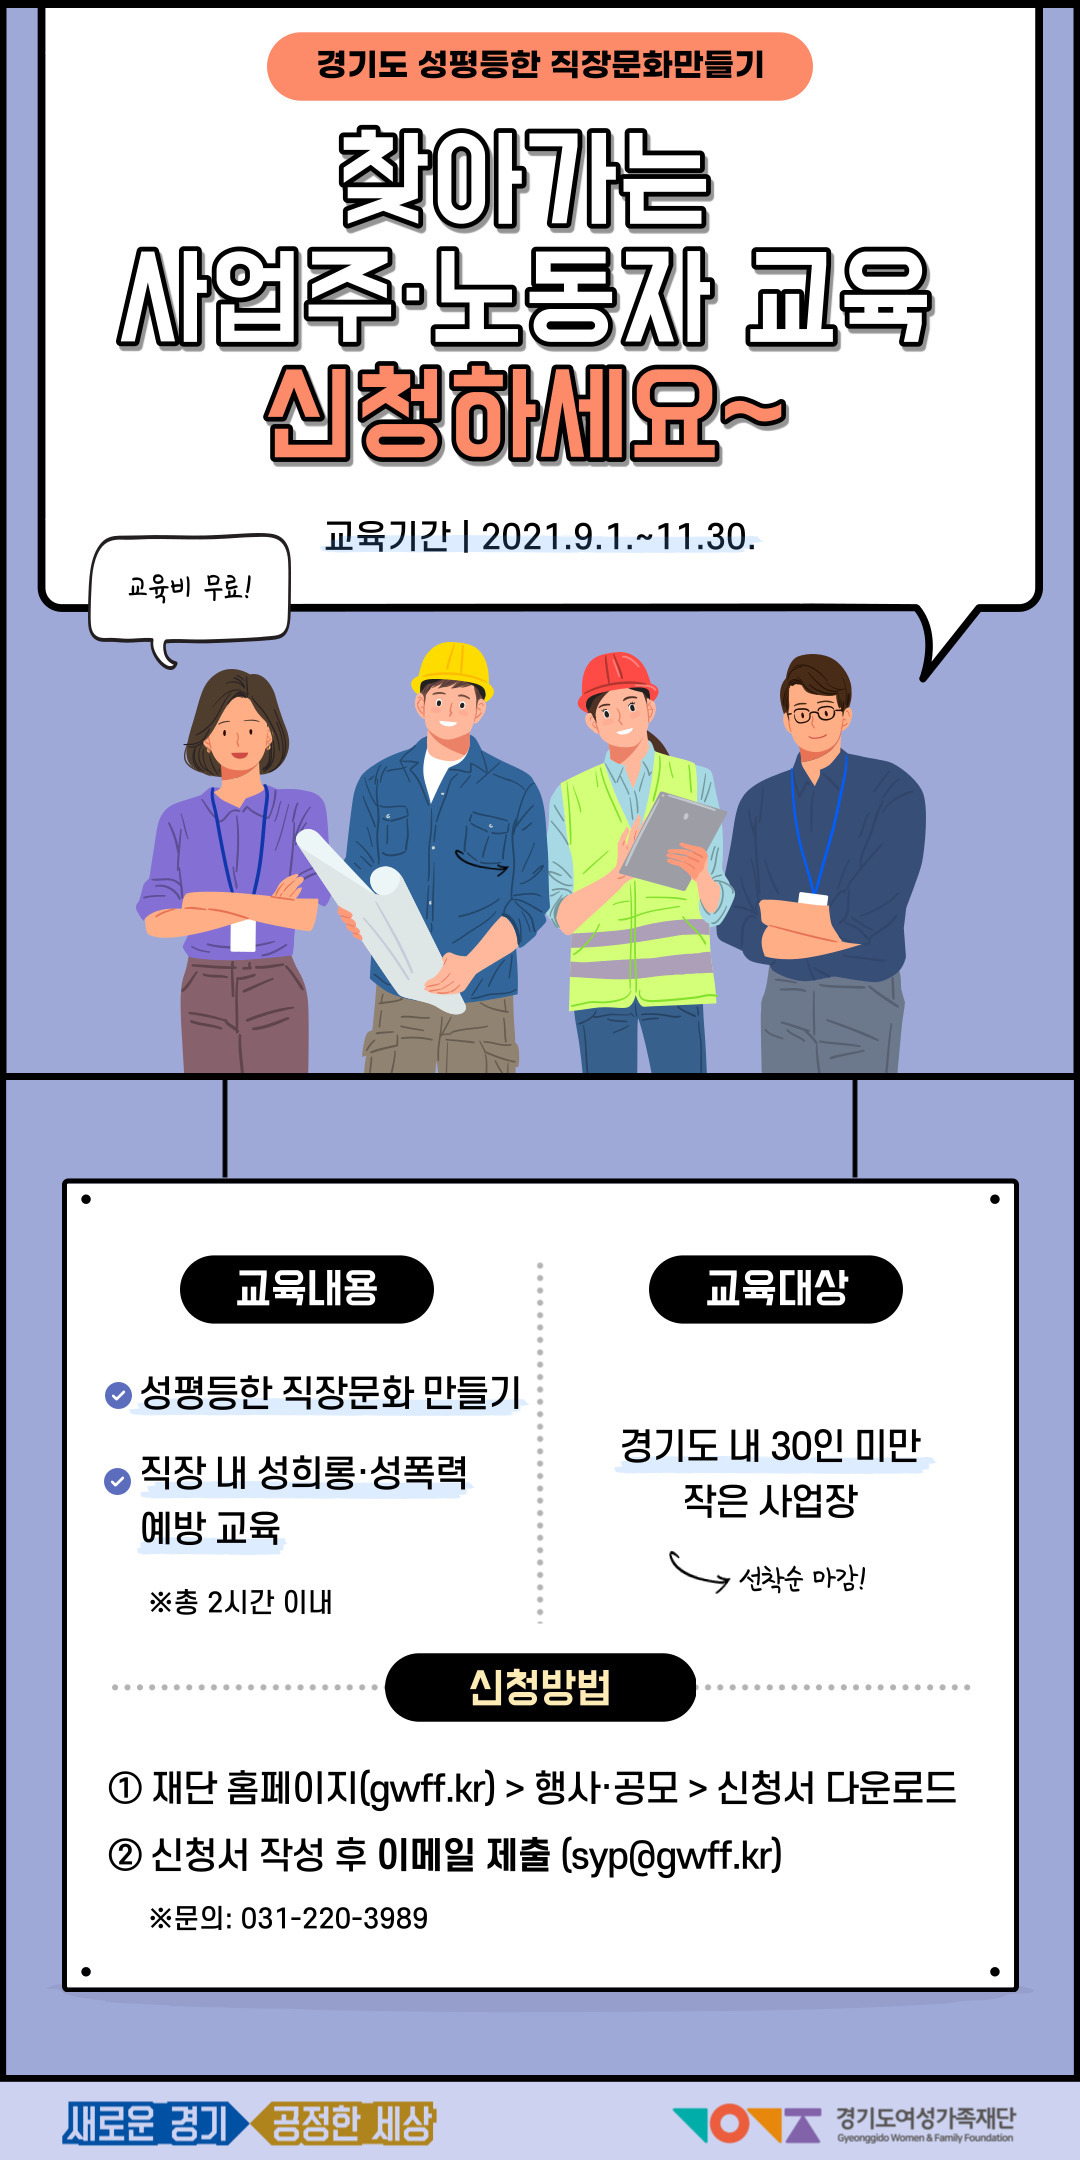 (붙임2) 경기도 성평등한 직장문화 만들기 교육 웹포스터